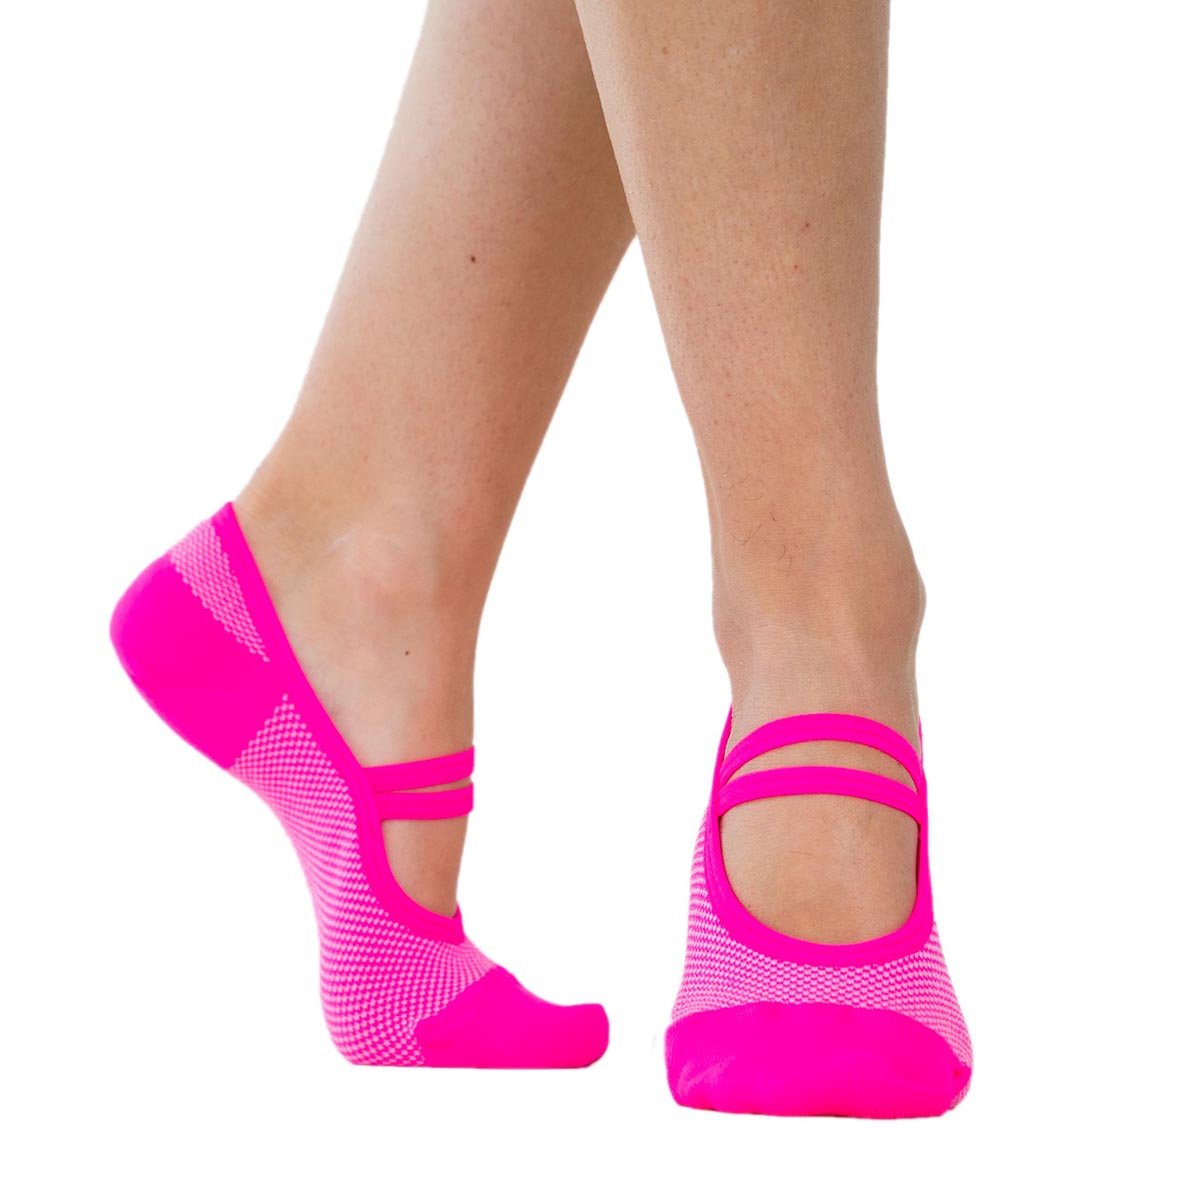 Yoga Socks, SKADE Non-Slip Grip Socks for Women Pilates Workout